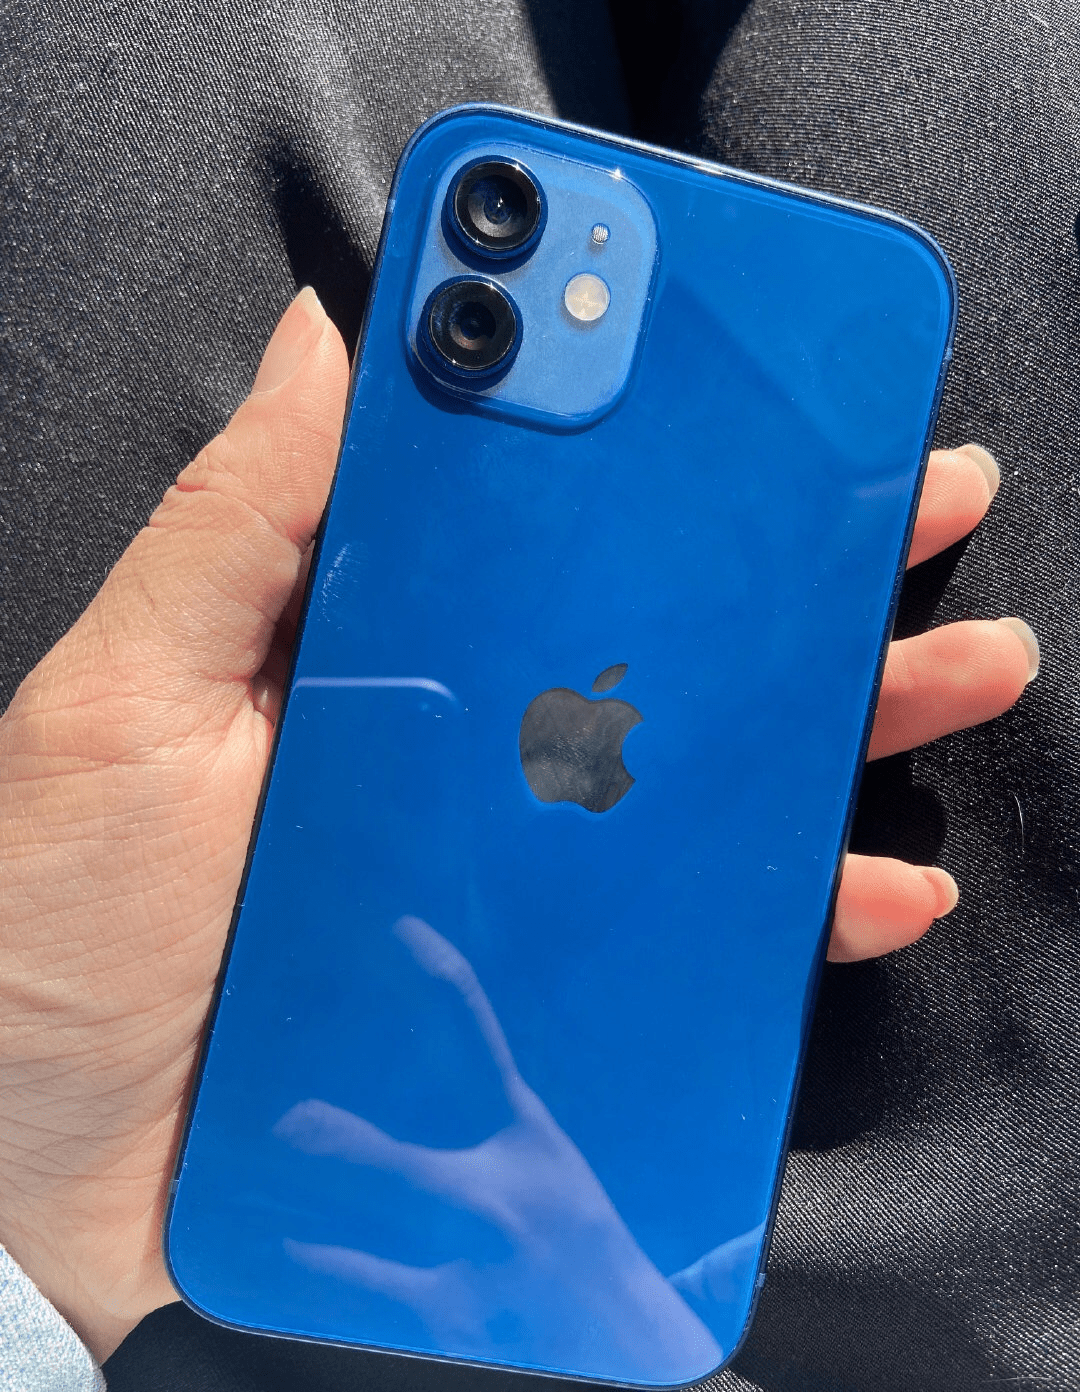 iphone12蓝色版首摔背面裂个稀碎摄像头都未能幸免